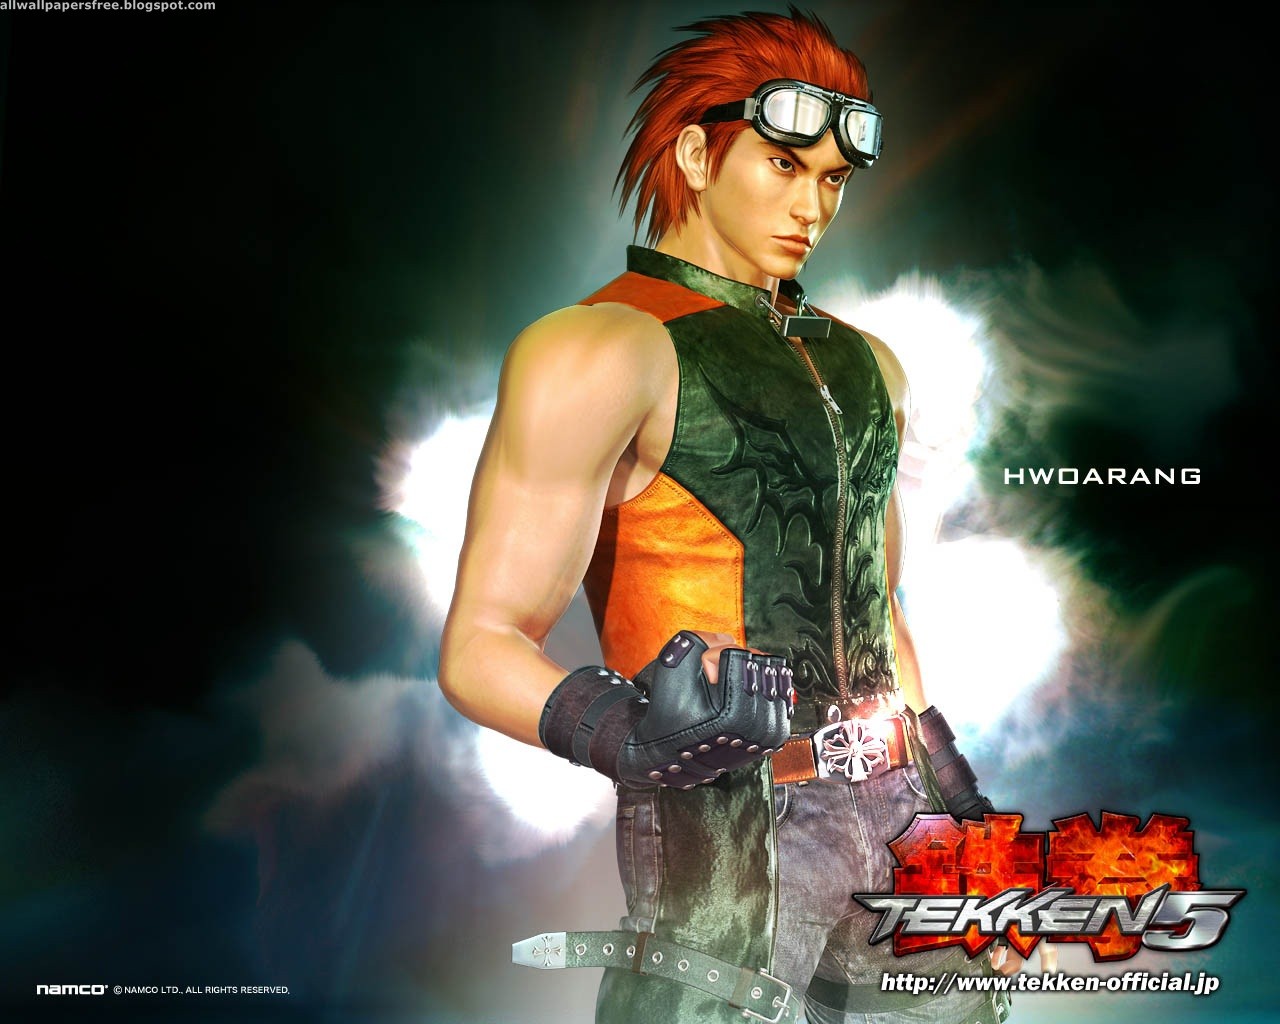 Tekken 5 Picture